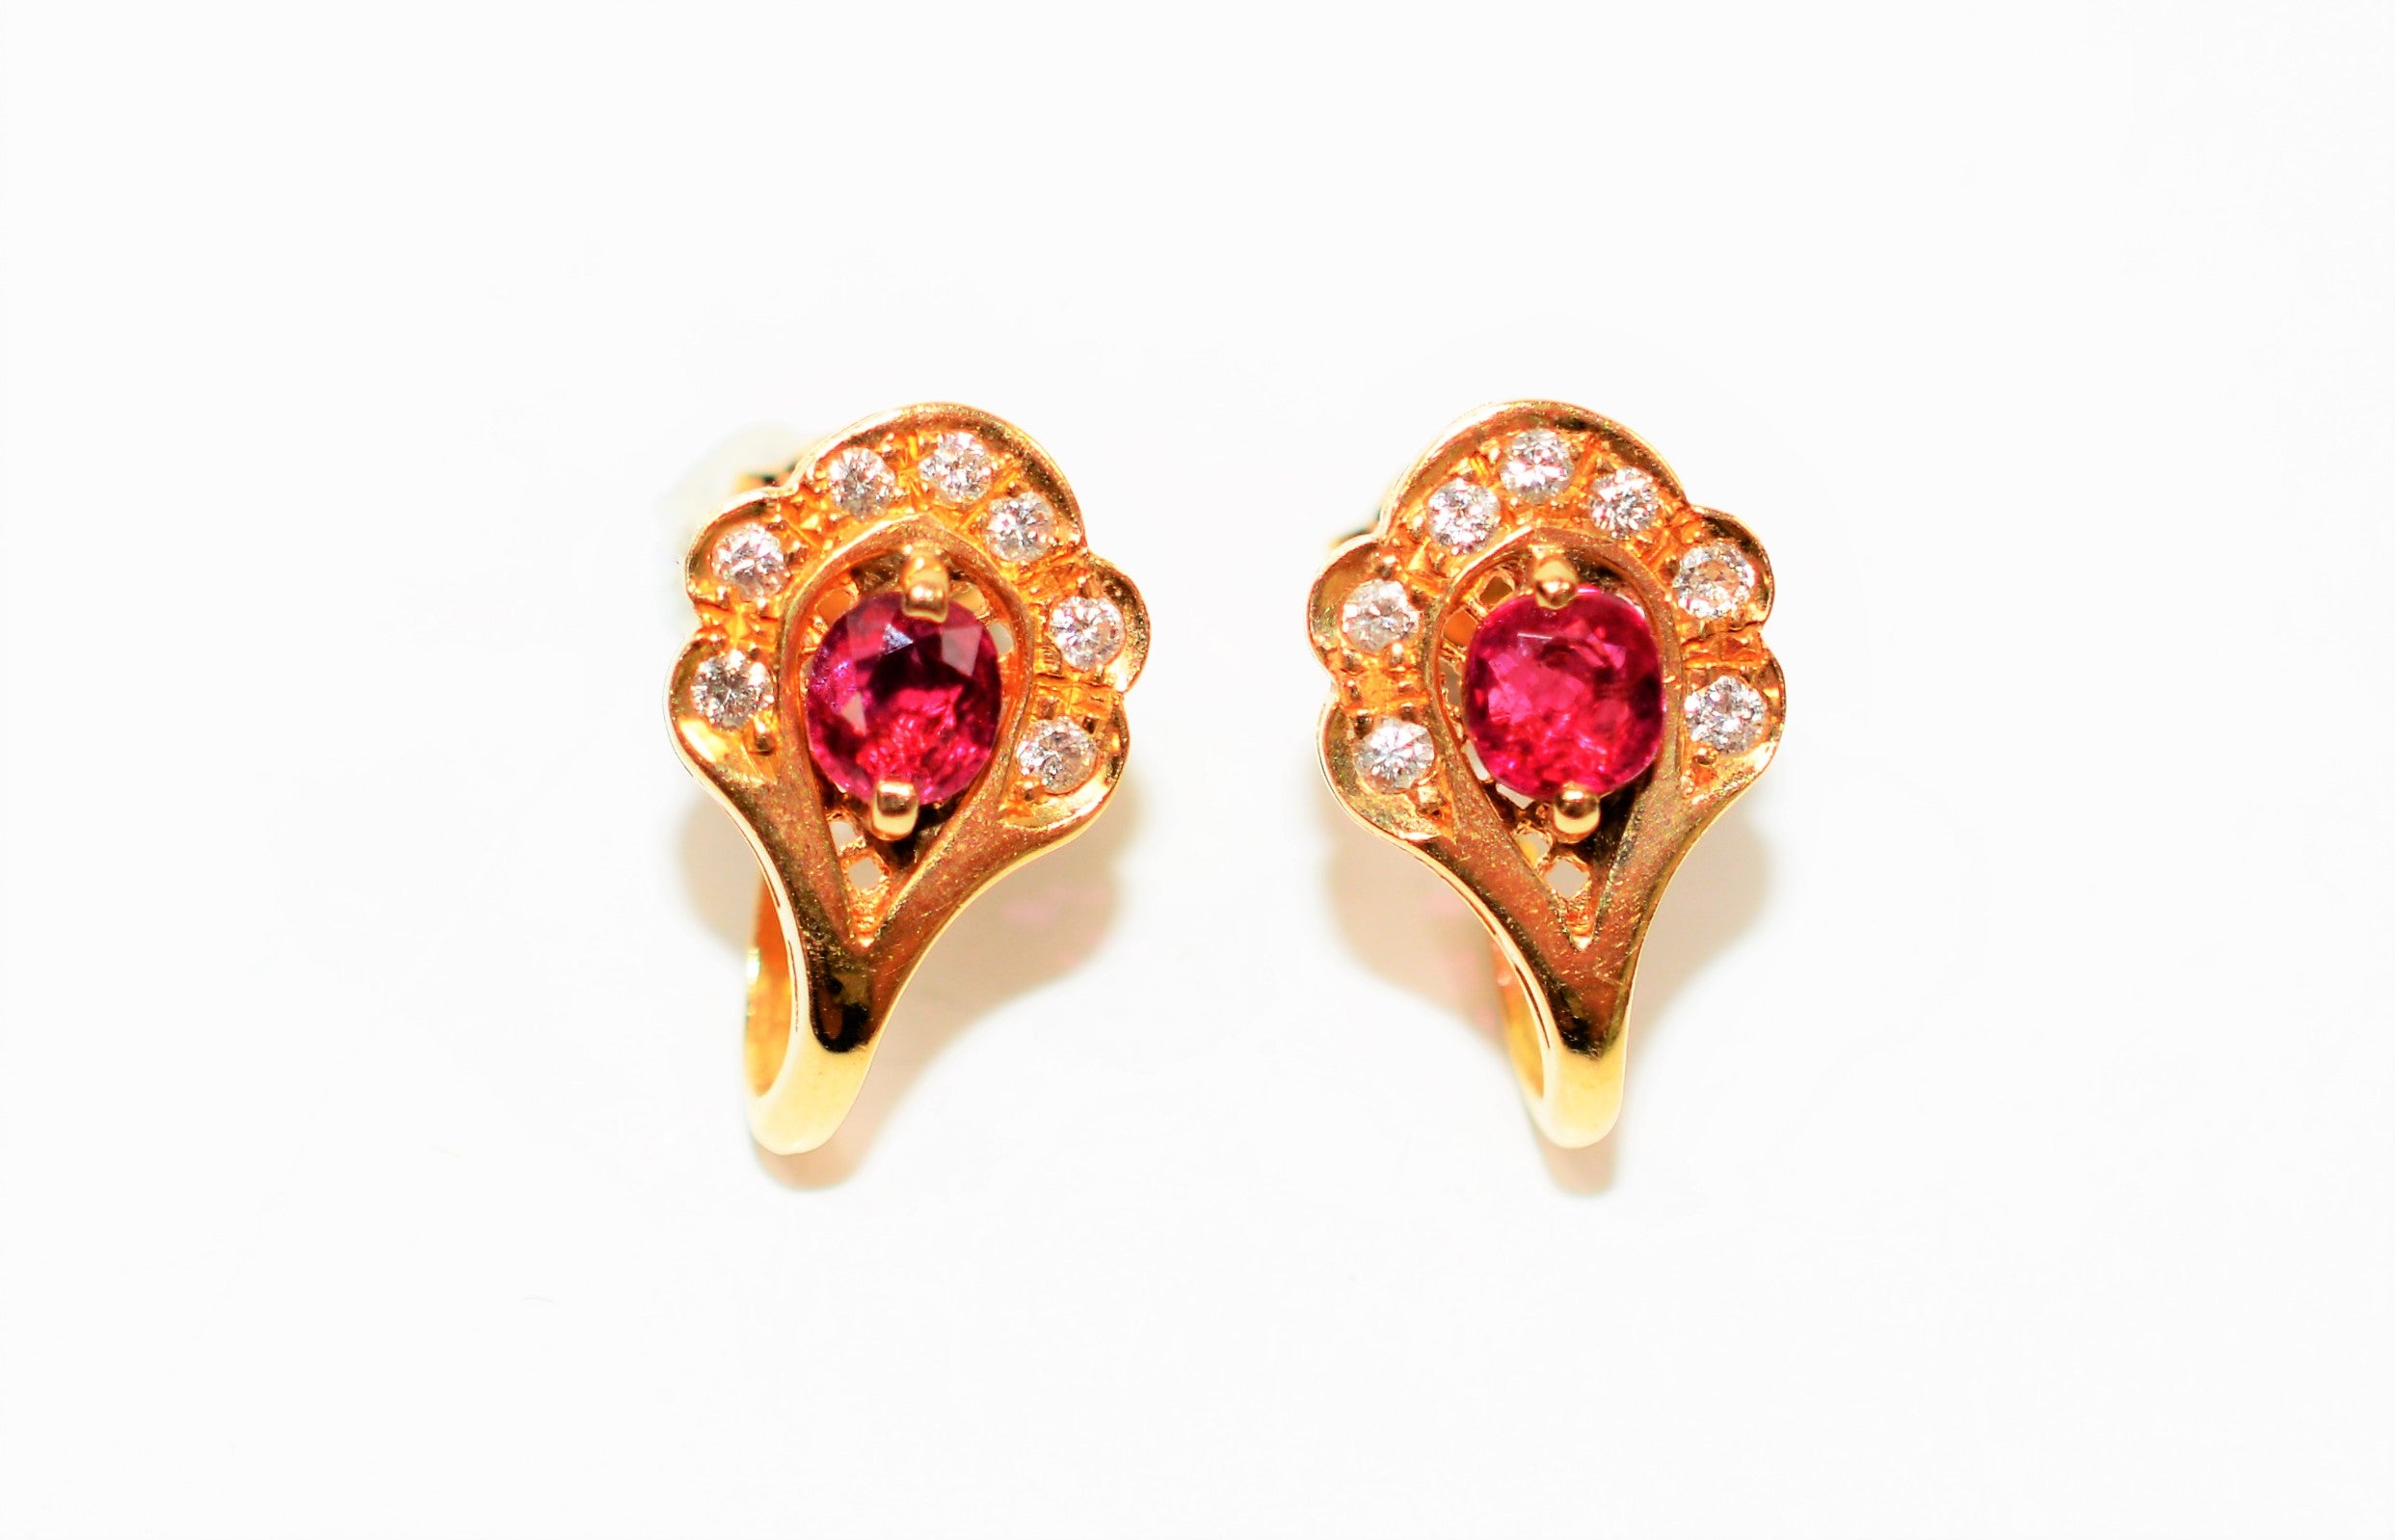 Natural Burmese Ruby & Diamond Earrings 18K Solid Gold  1.01tcw Ruby Earrings Gemstone Earrings Cocktail Earrings Statement Women's Earrings